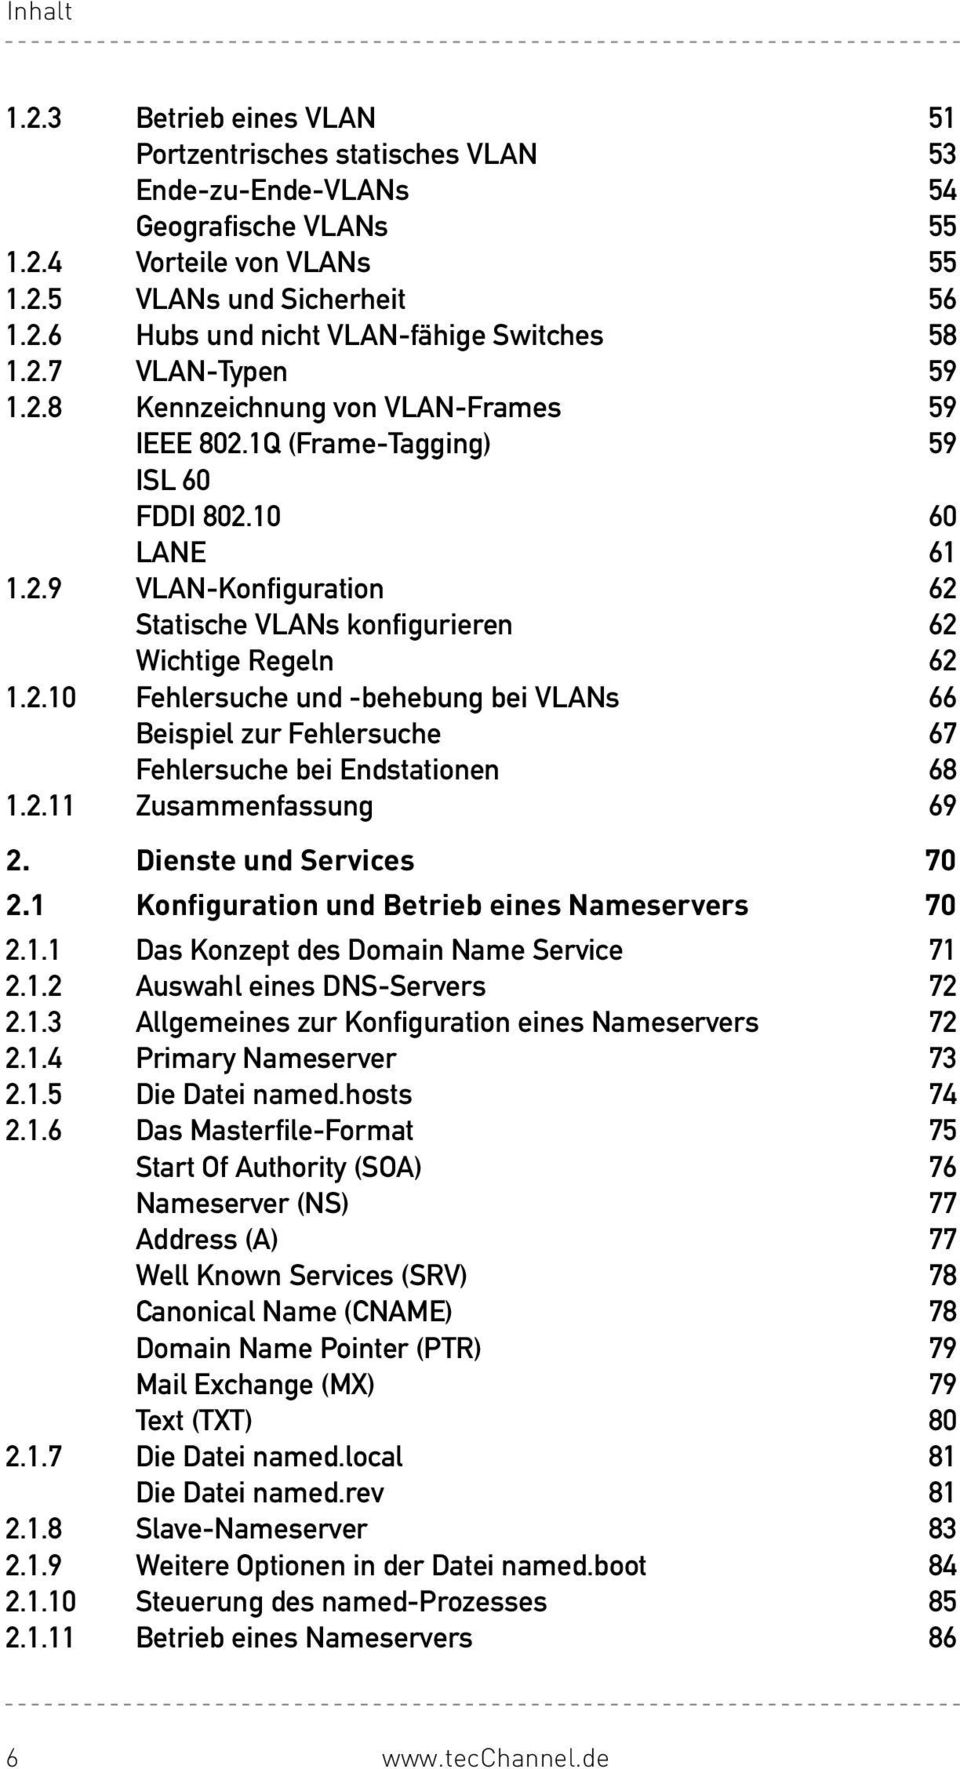 2.10 Fehlersuche und -behebung bei VLANs 66 Beispiel zur Fehlersuche 67 Fehlersuche bei Endstationen 68 1.2.11 Zusammenfassung 69 2. Dienste und Services 70 2.